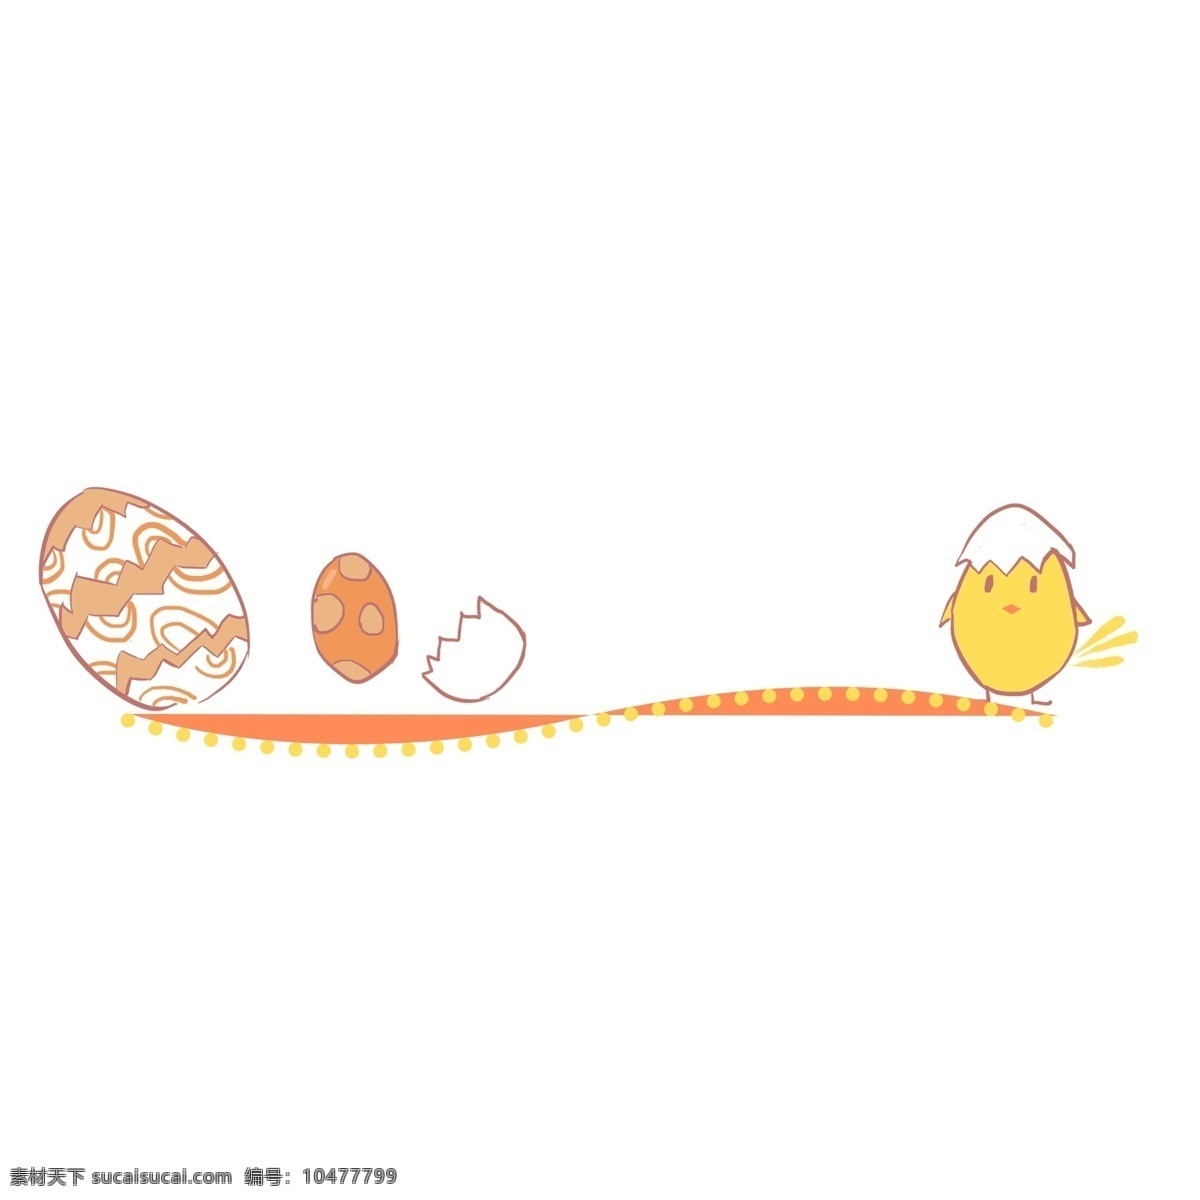 卡通 彩蛋 小鸡 分割线 鸡蛋 卡通分割线 彩蛋分割线 小鸡分割线 鸡蛋分割线 小黄鸡 鸡蛋壳分割线